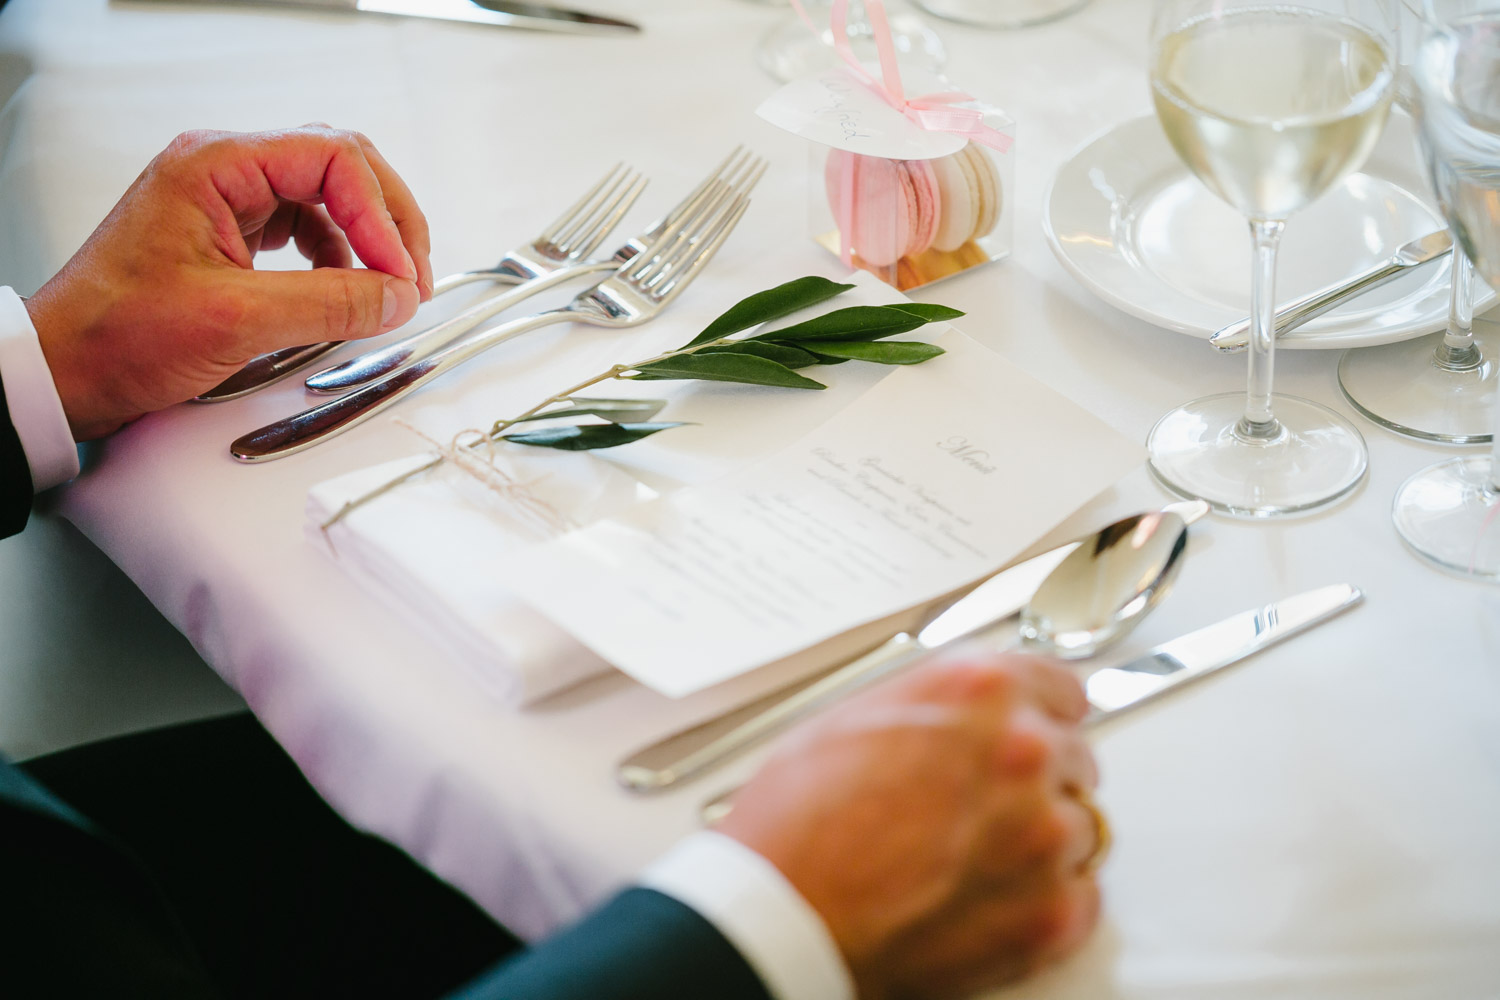 Tischdeko Hochzeit